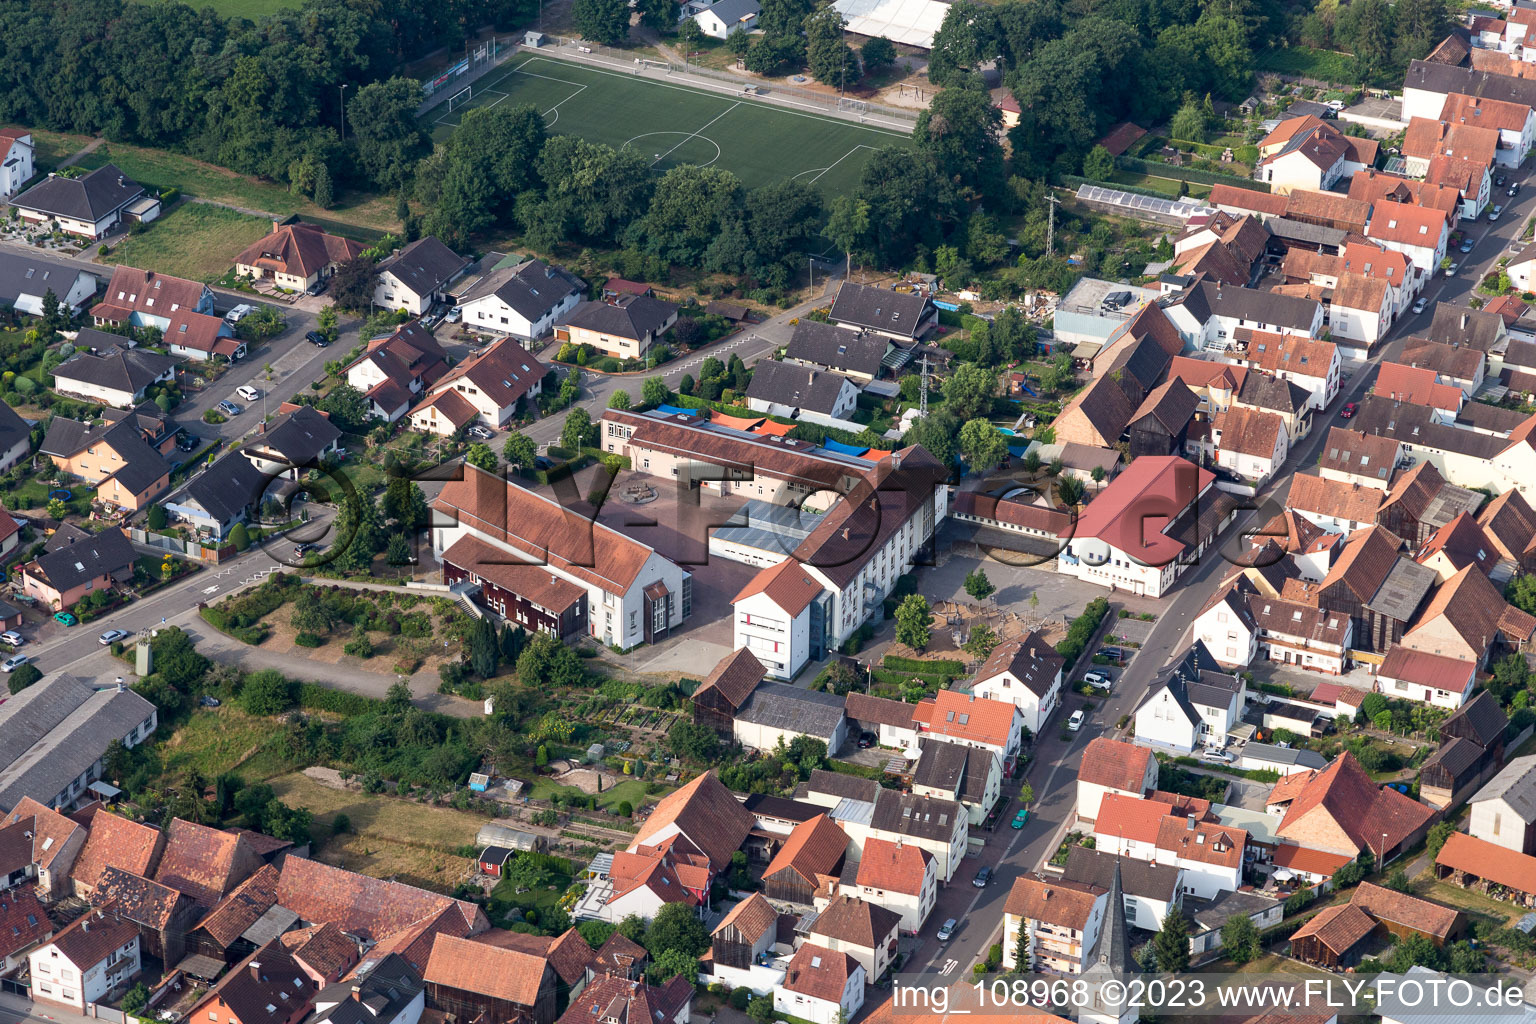 Hatzenbühl im Bundesland Rheinland-Pfalz, Deutschland aus der Luft